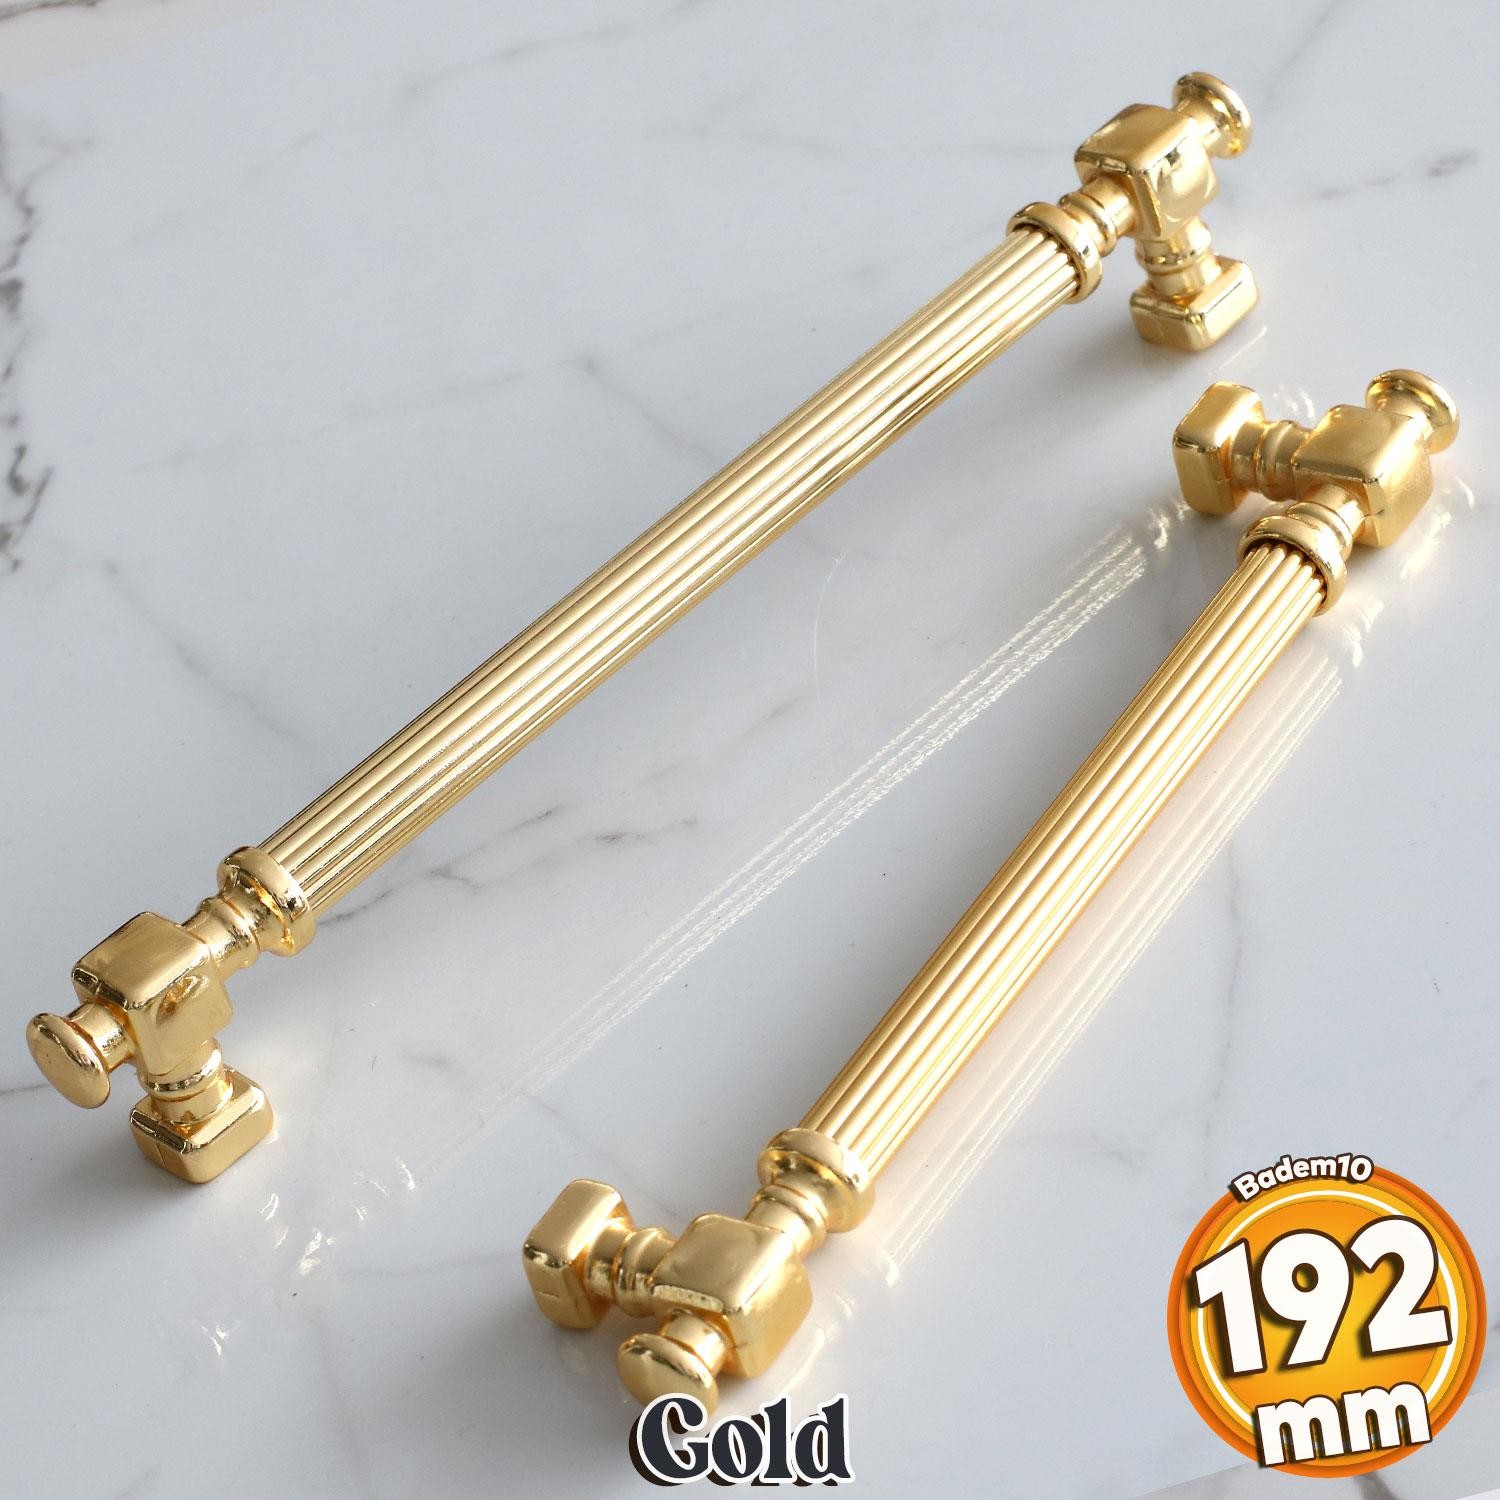 Talas Altın Çizgi Metal Kulp 192 mm 19.2 cm Mobilya Çekmece Mutfak Dolabı Dolap Kapak Kulpları Kulbu